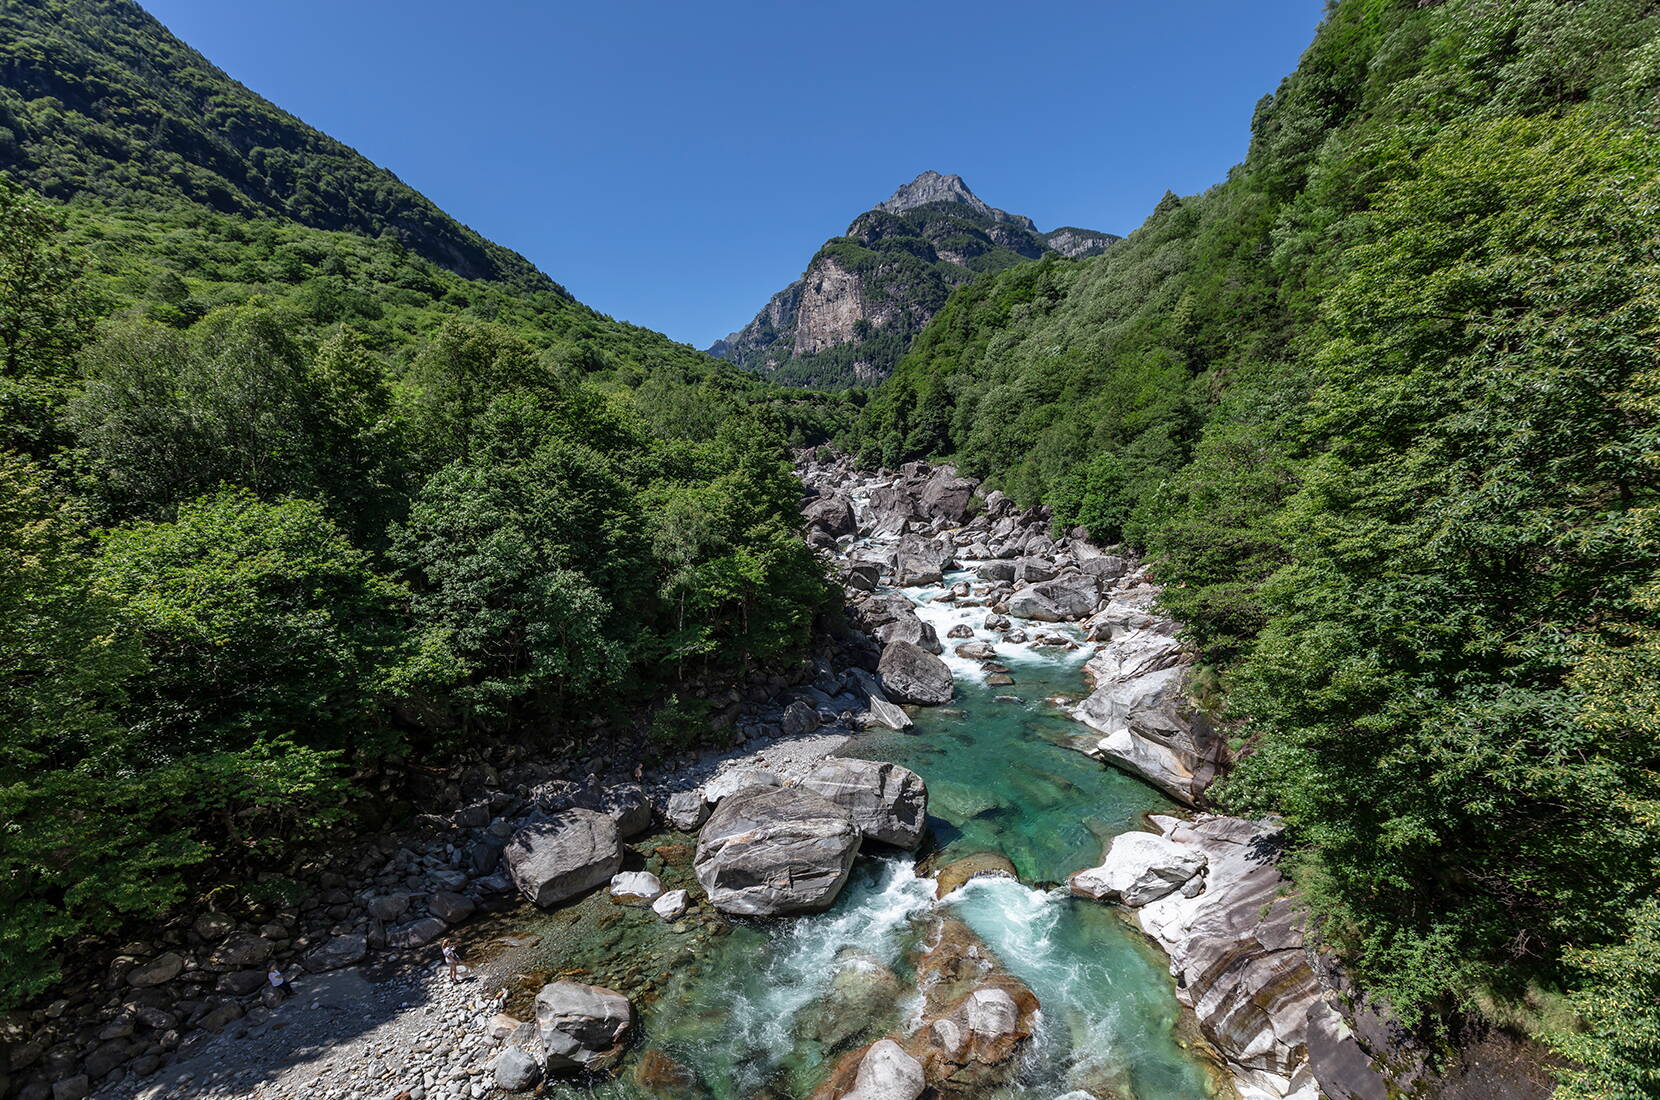 Excursion en famille Sentierone Verzasca. Une des plus belles randonnées du Tessin, le long de la Verzasca qui traverse toute la vallée jusqu'à Sonogno.